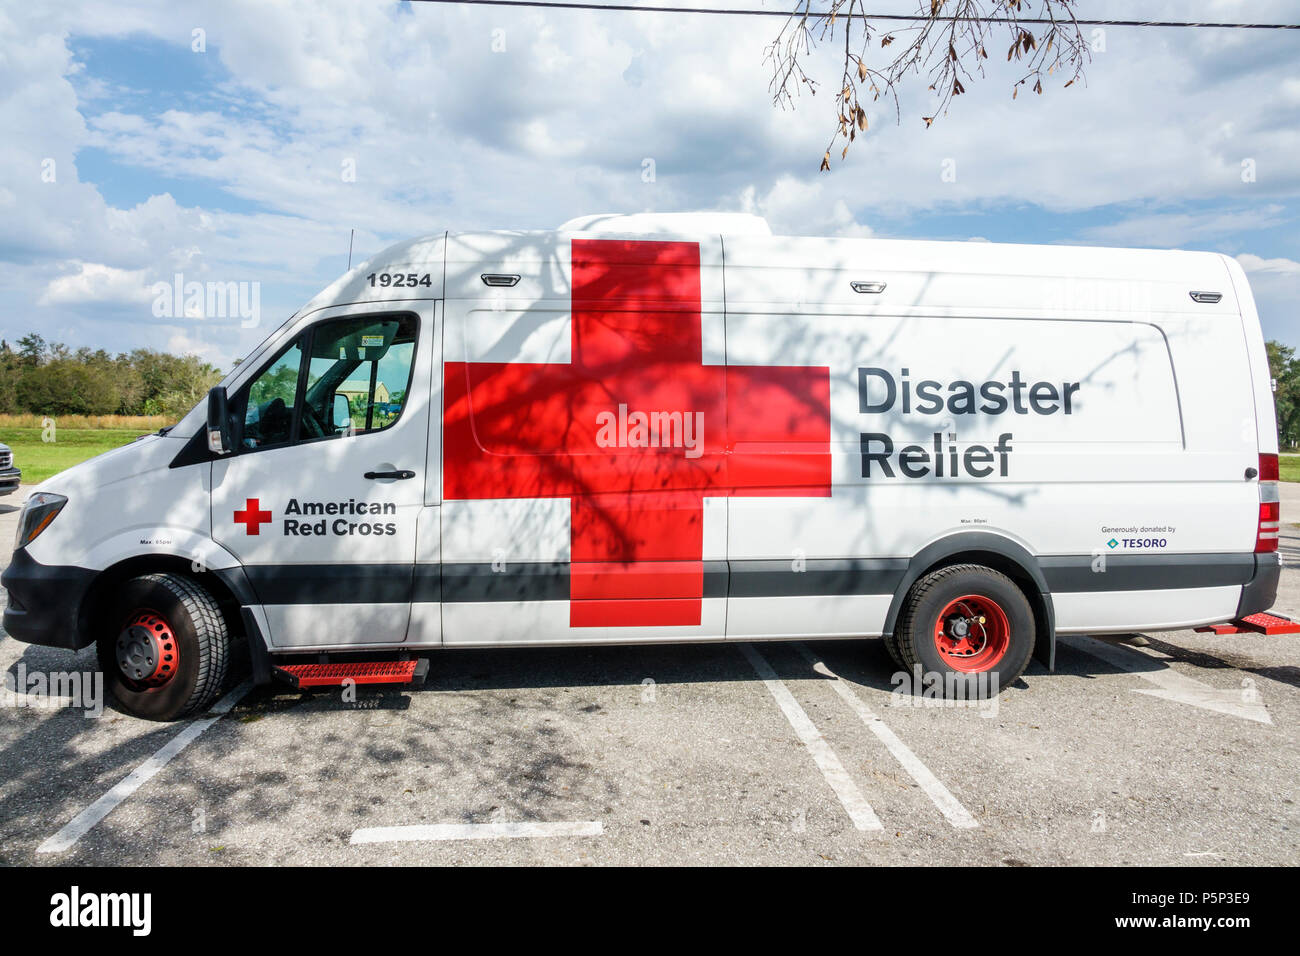 Floride,LaBelle,après l'ouragan Irma,aide aux tempêtes,séquelles de destruction,secours de secours en cas de catastrophe,Croix-Rouge secours en cas de catastrophe,Van,FL170925228 Banque D'Images